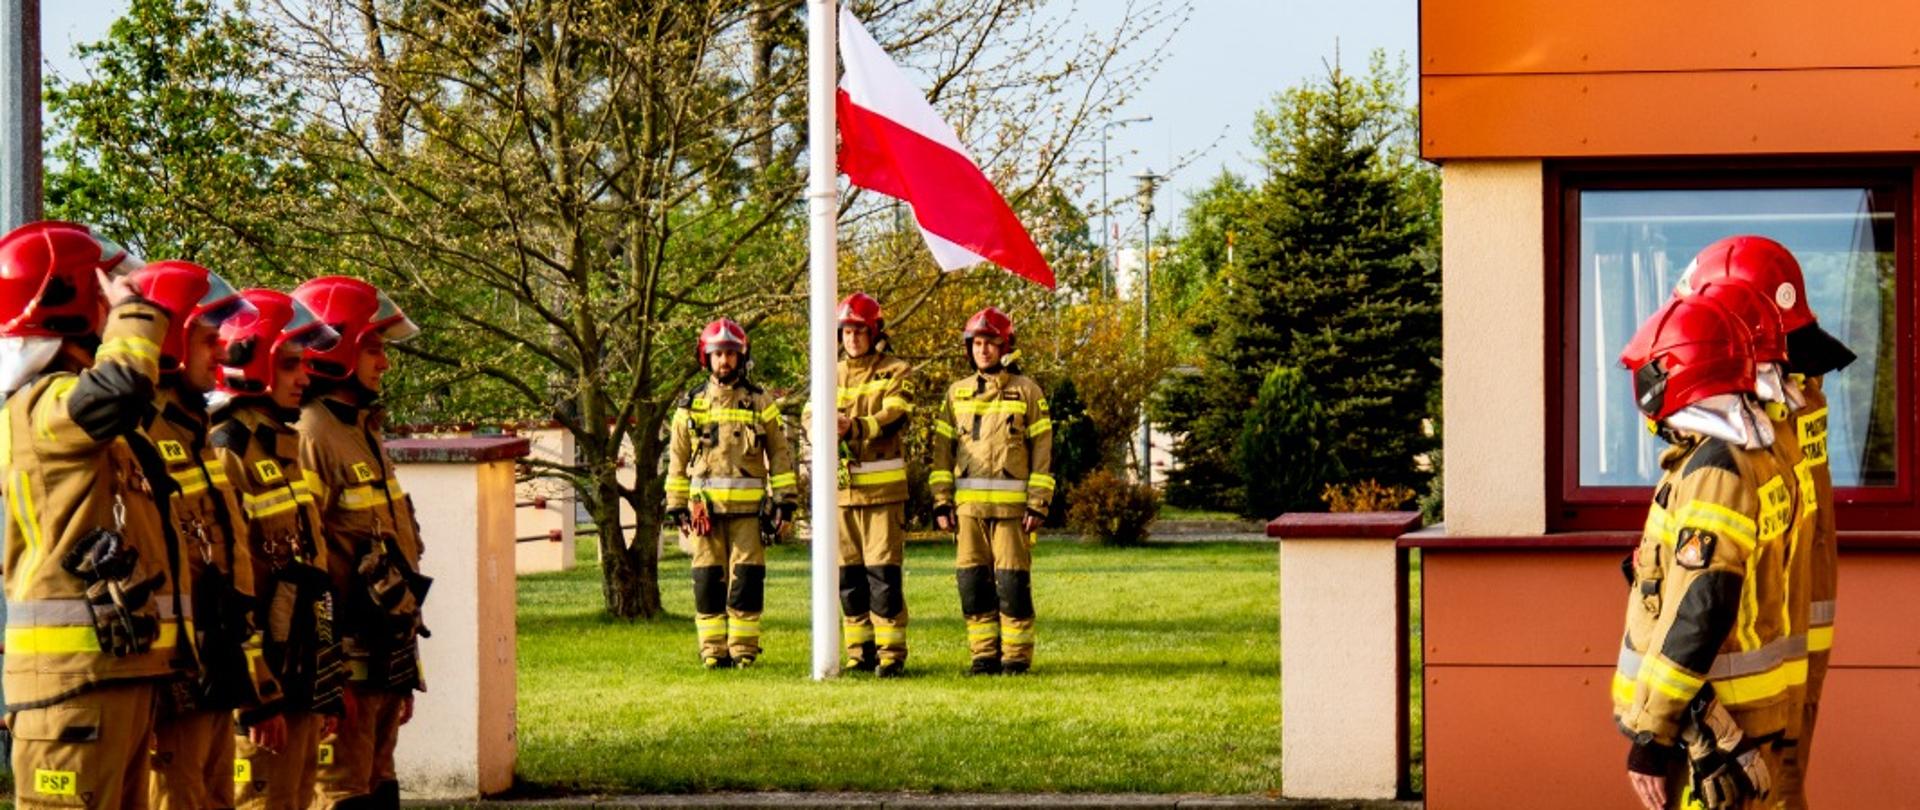 Zdjęcie przedstawia uroczystą zmianę służby w JRG Międzyrzecz w dniu Święta Flagi Rzeczypospolitej Polskiej na placu przed Komendą w Międzyrzeczu